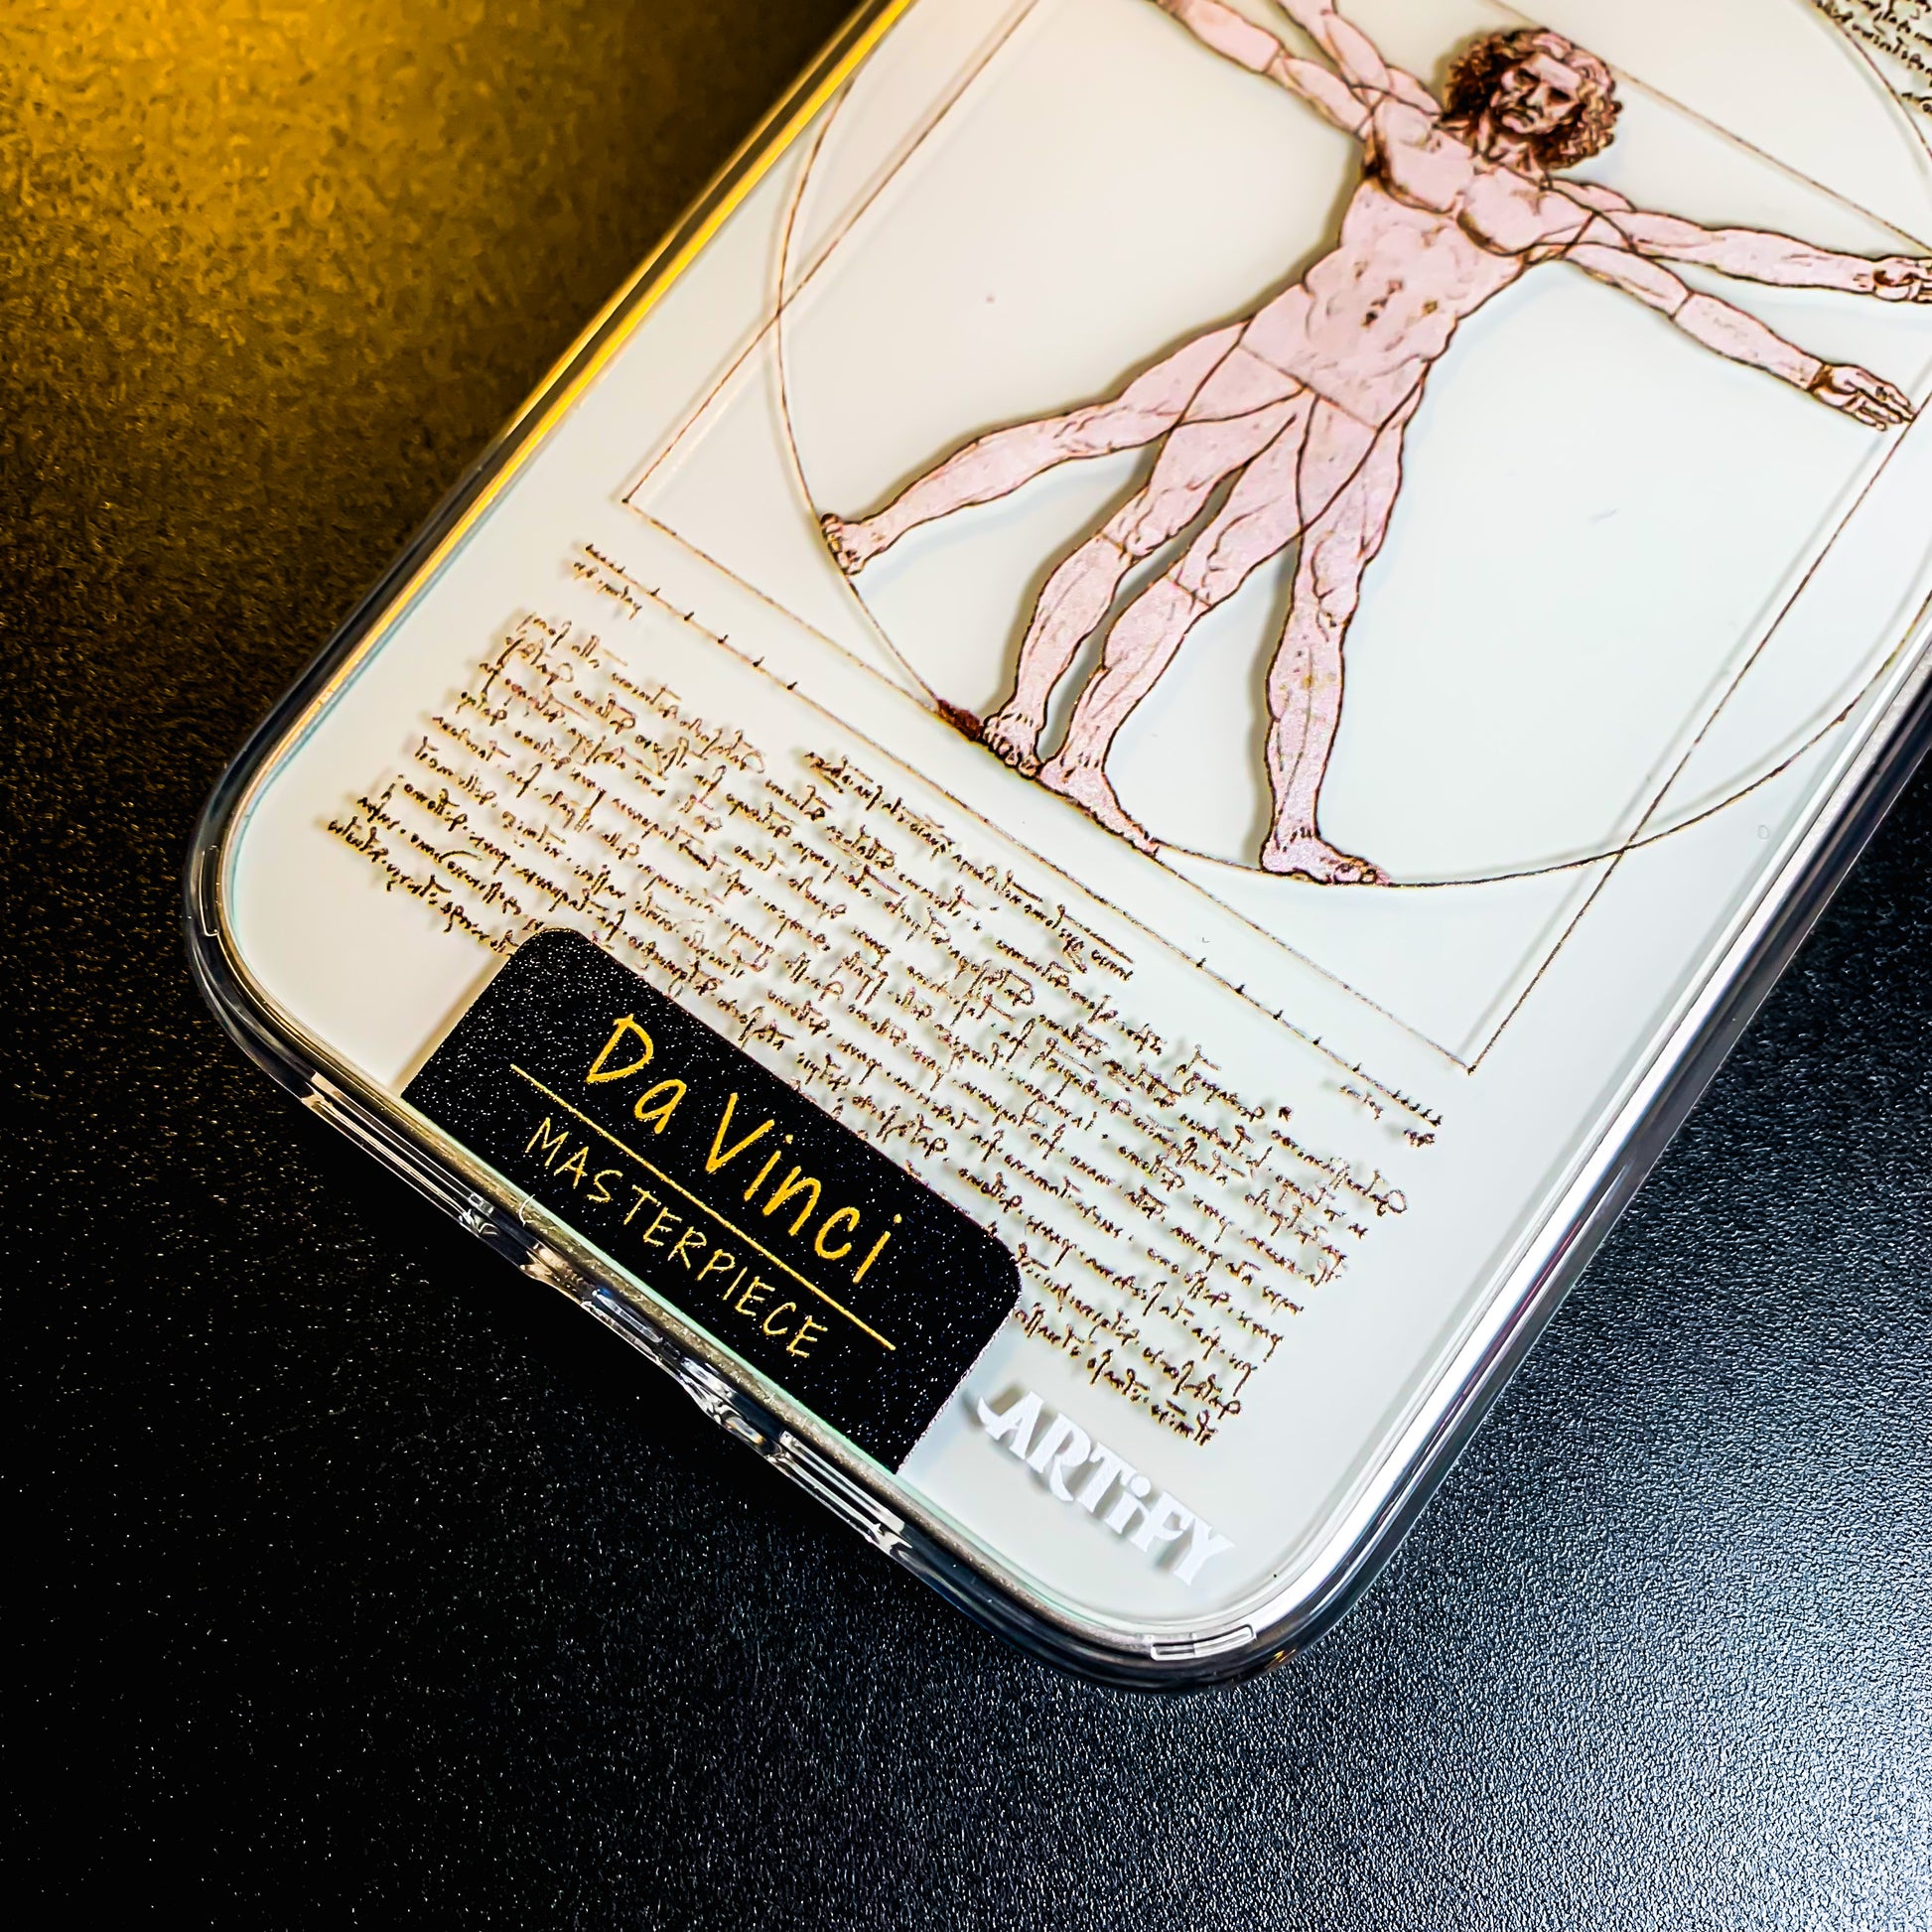 ウィトルウィウス的人体図 ダ・ヴィンチ iPhone ケース